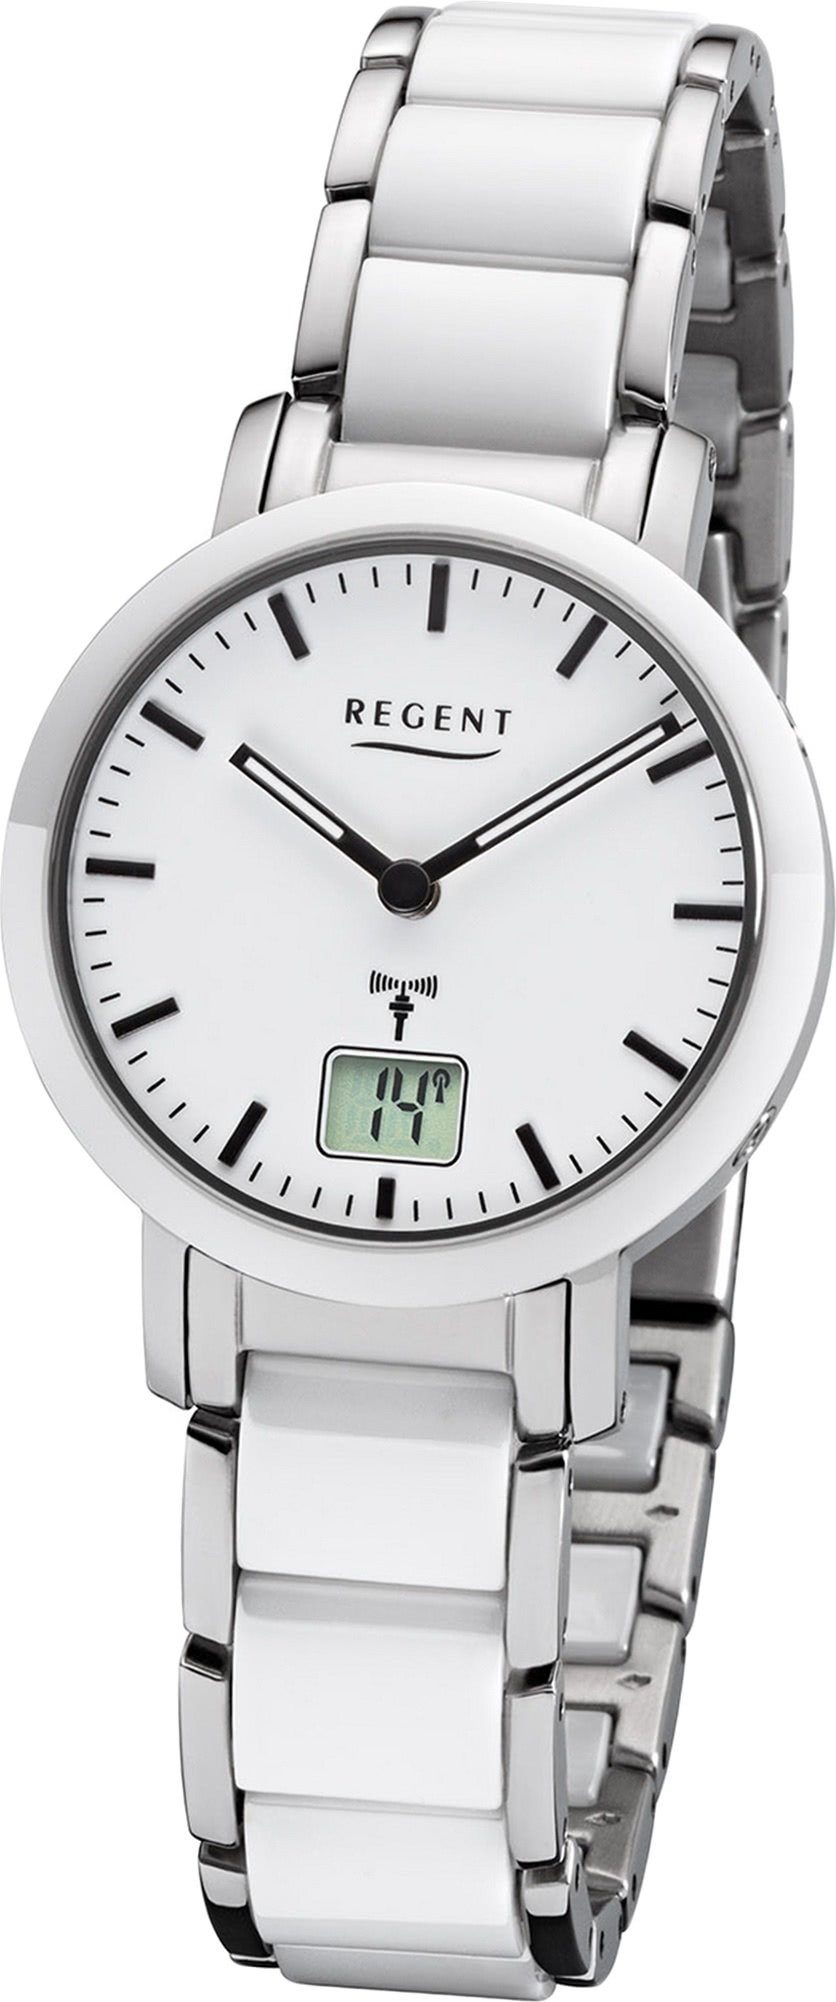 Regent Funkuhr Regent Metall Damen Uhr FR-264, Damenuhr Metallarmband weiß, silber, rundes Gehäuse, klein (ca. 30mm)